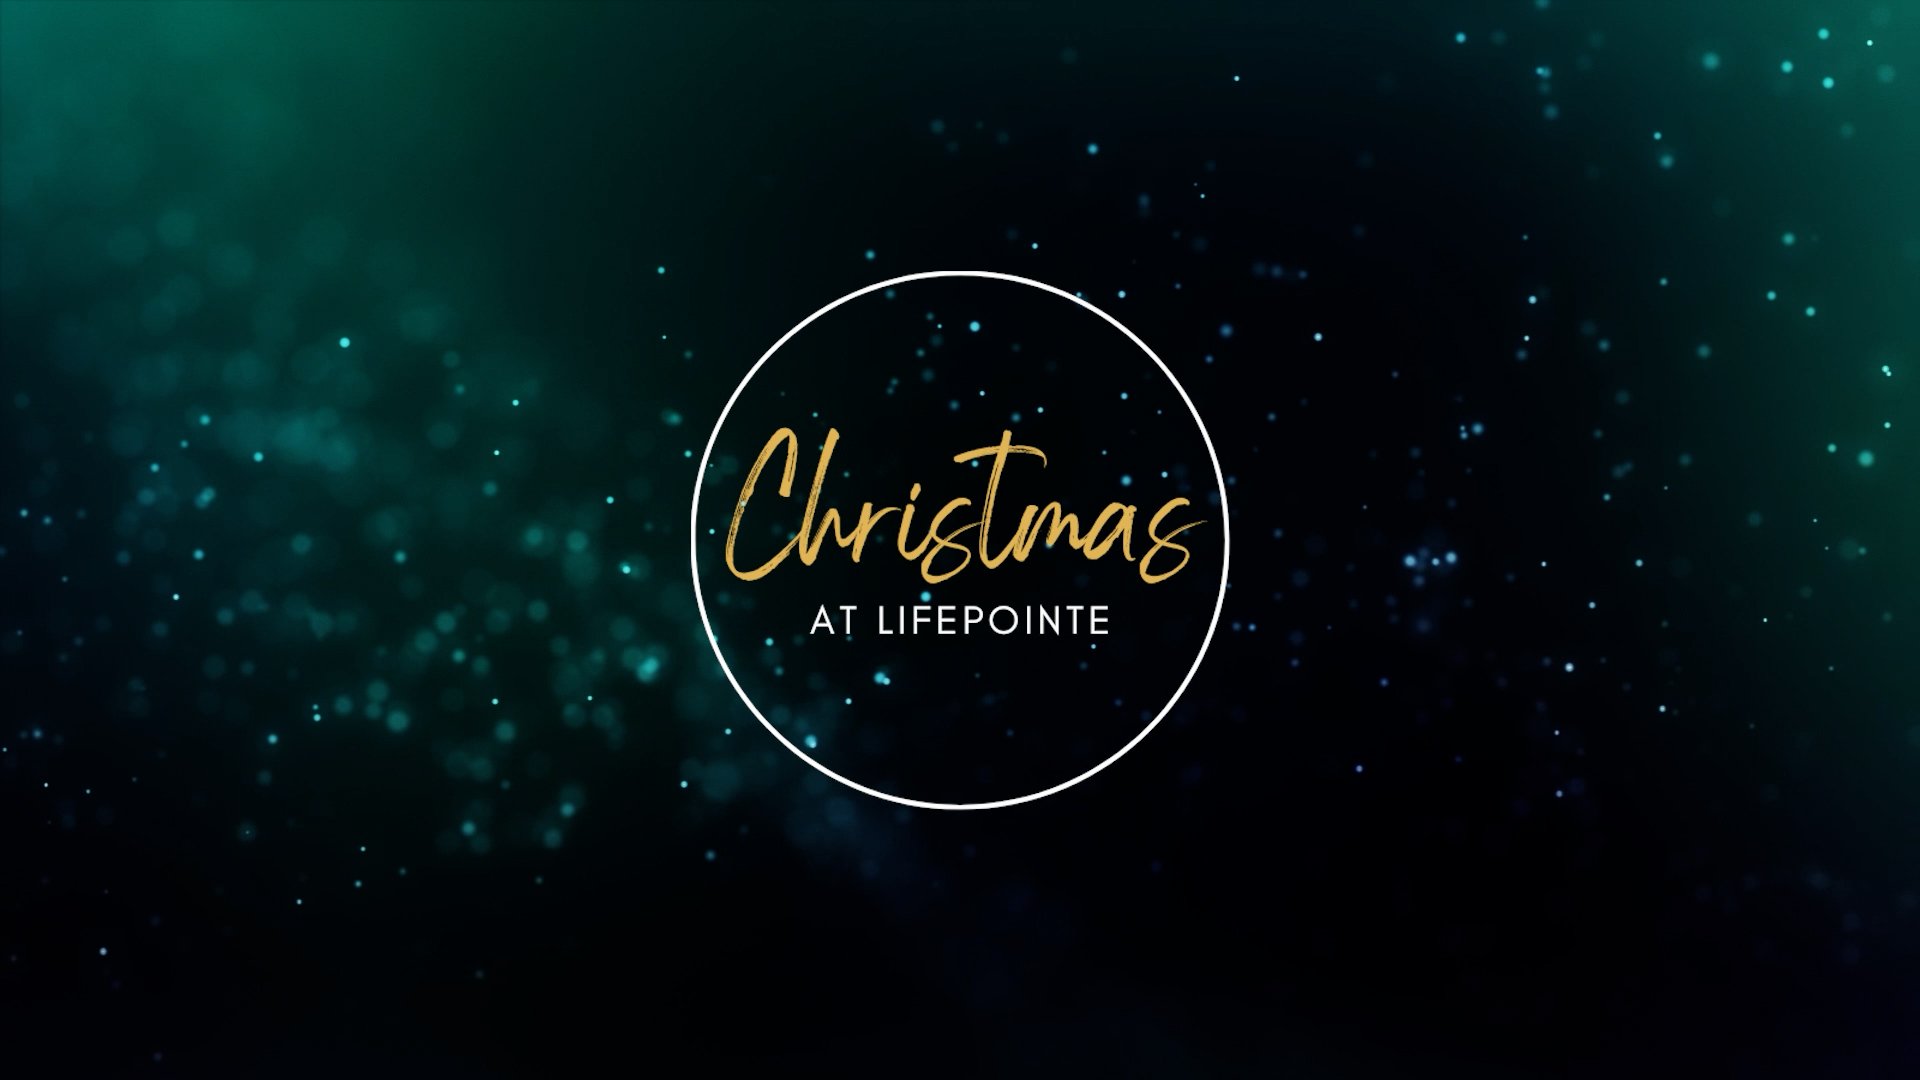 Christmas at Lifepointe thumbnail0.jpg